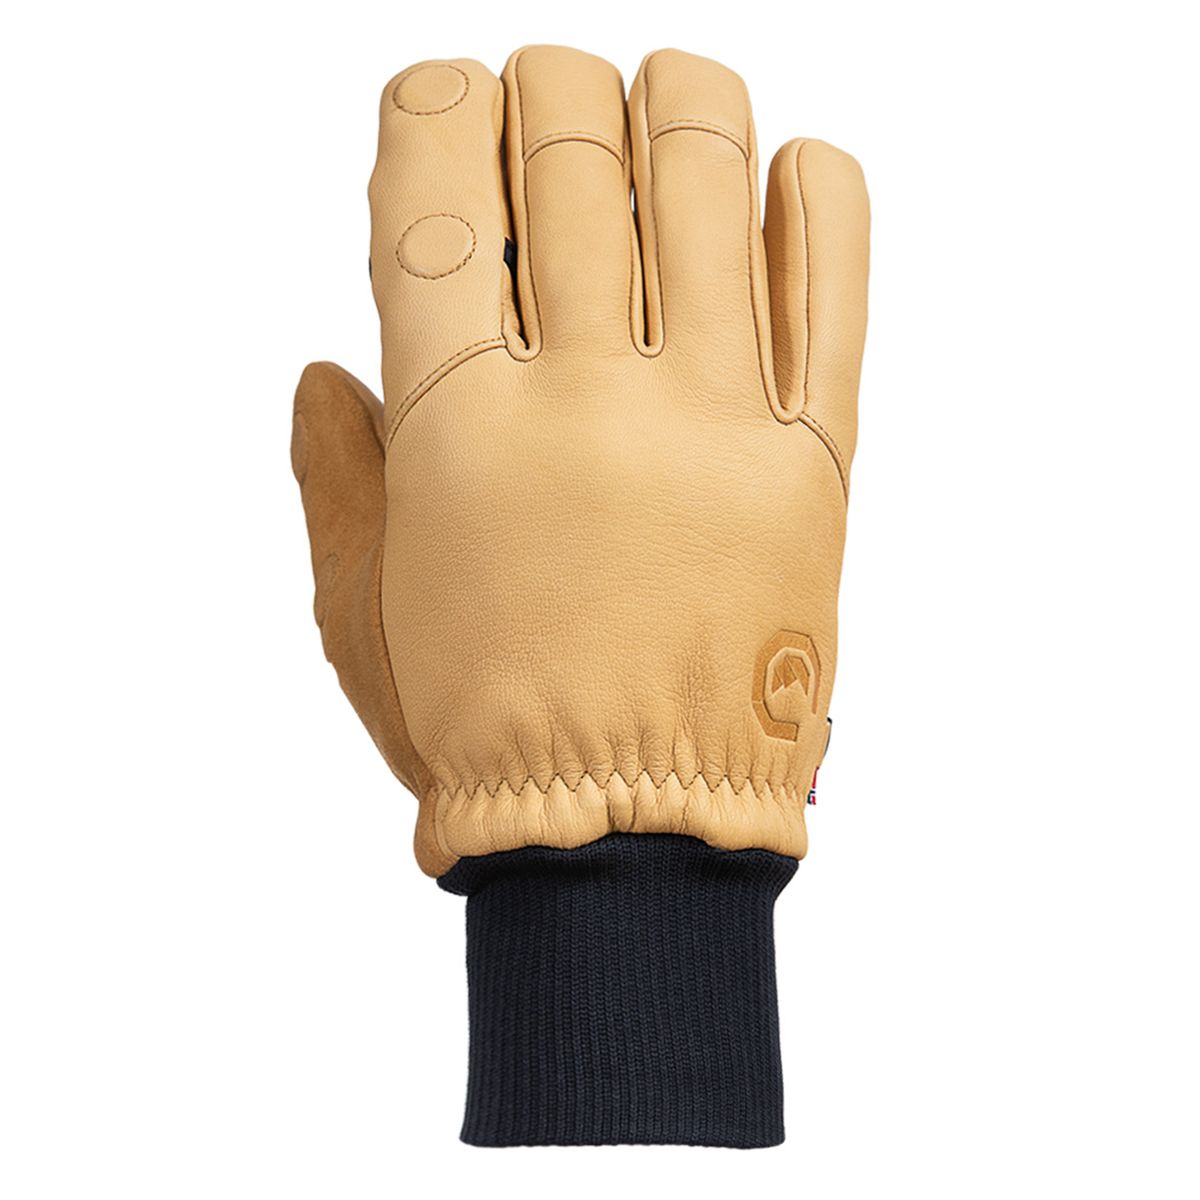 Vallerret Hatchet Leather Glove Natural, Leder-Fotohandschuhe M - Hellbraun